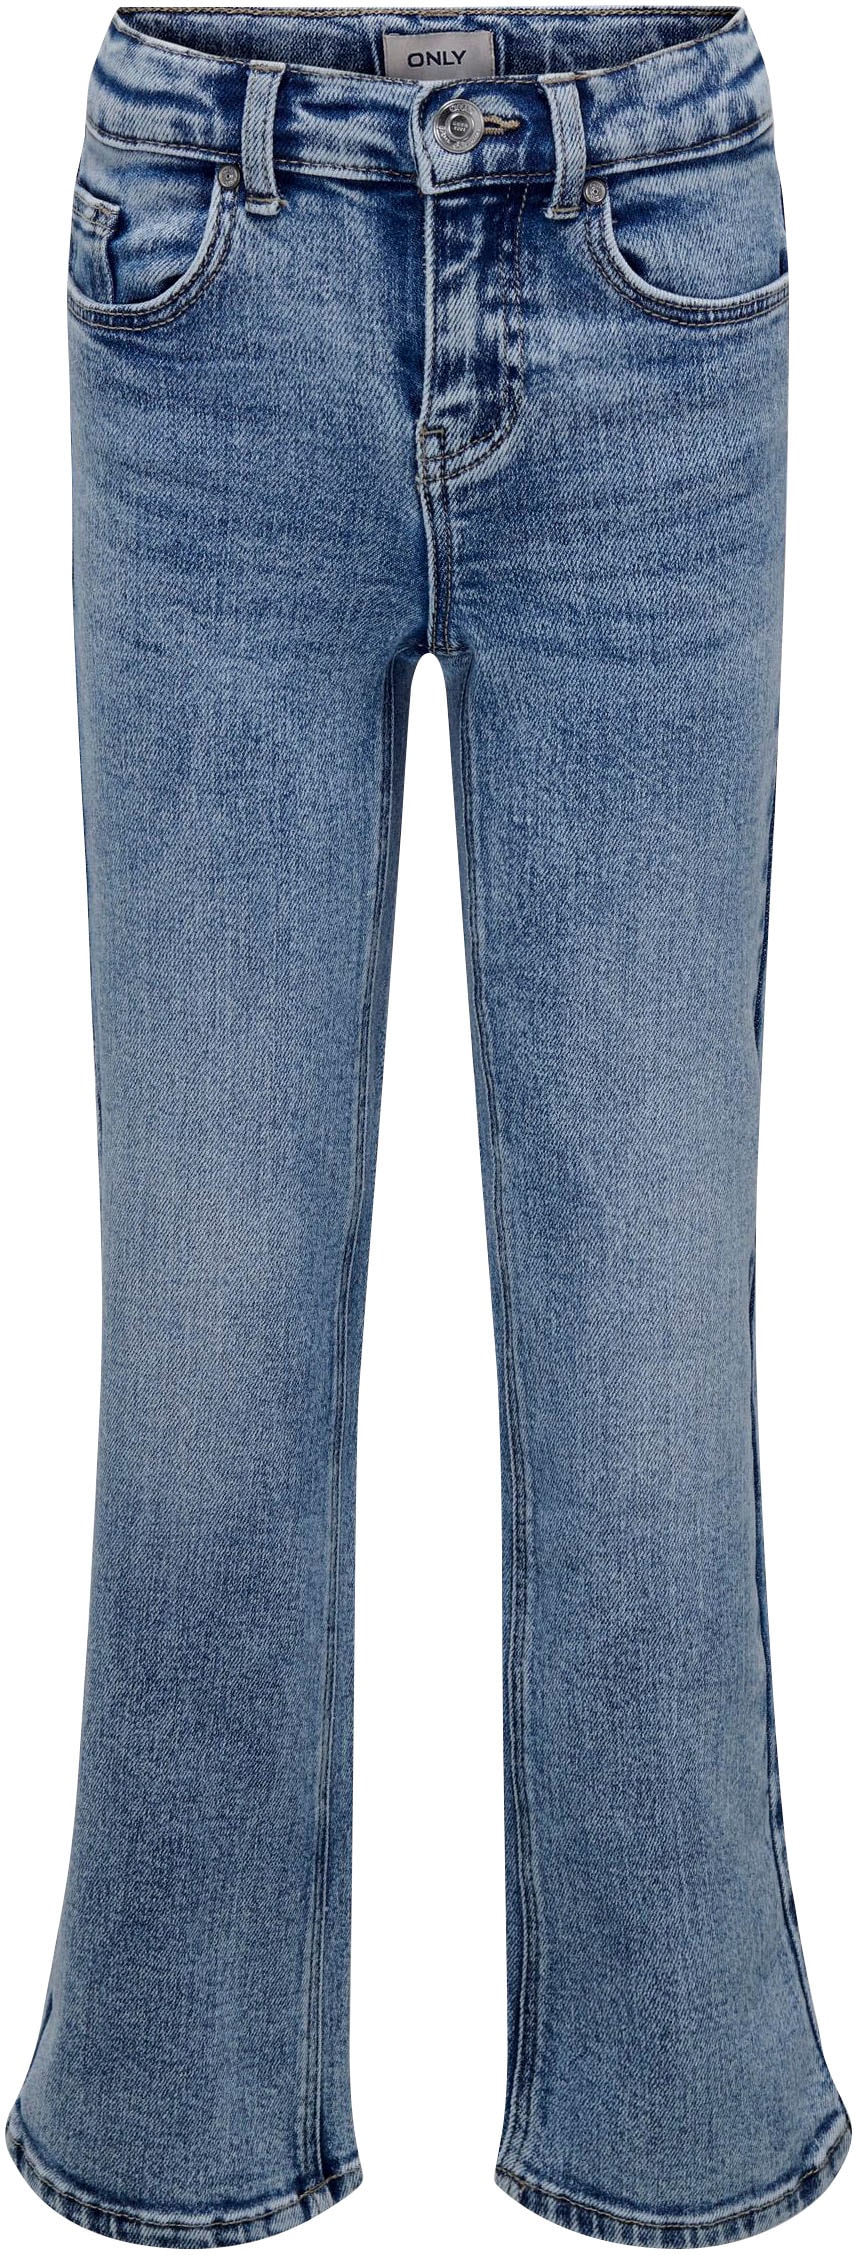 Trendige KIDS WIDE 5-Pocket-Jeans DEST LEG bestellen versandkostenfrei »KOGJUICY DN« ONLY